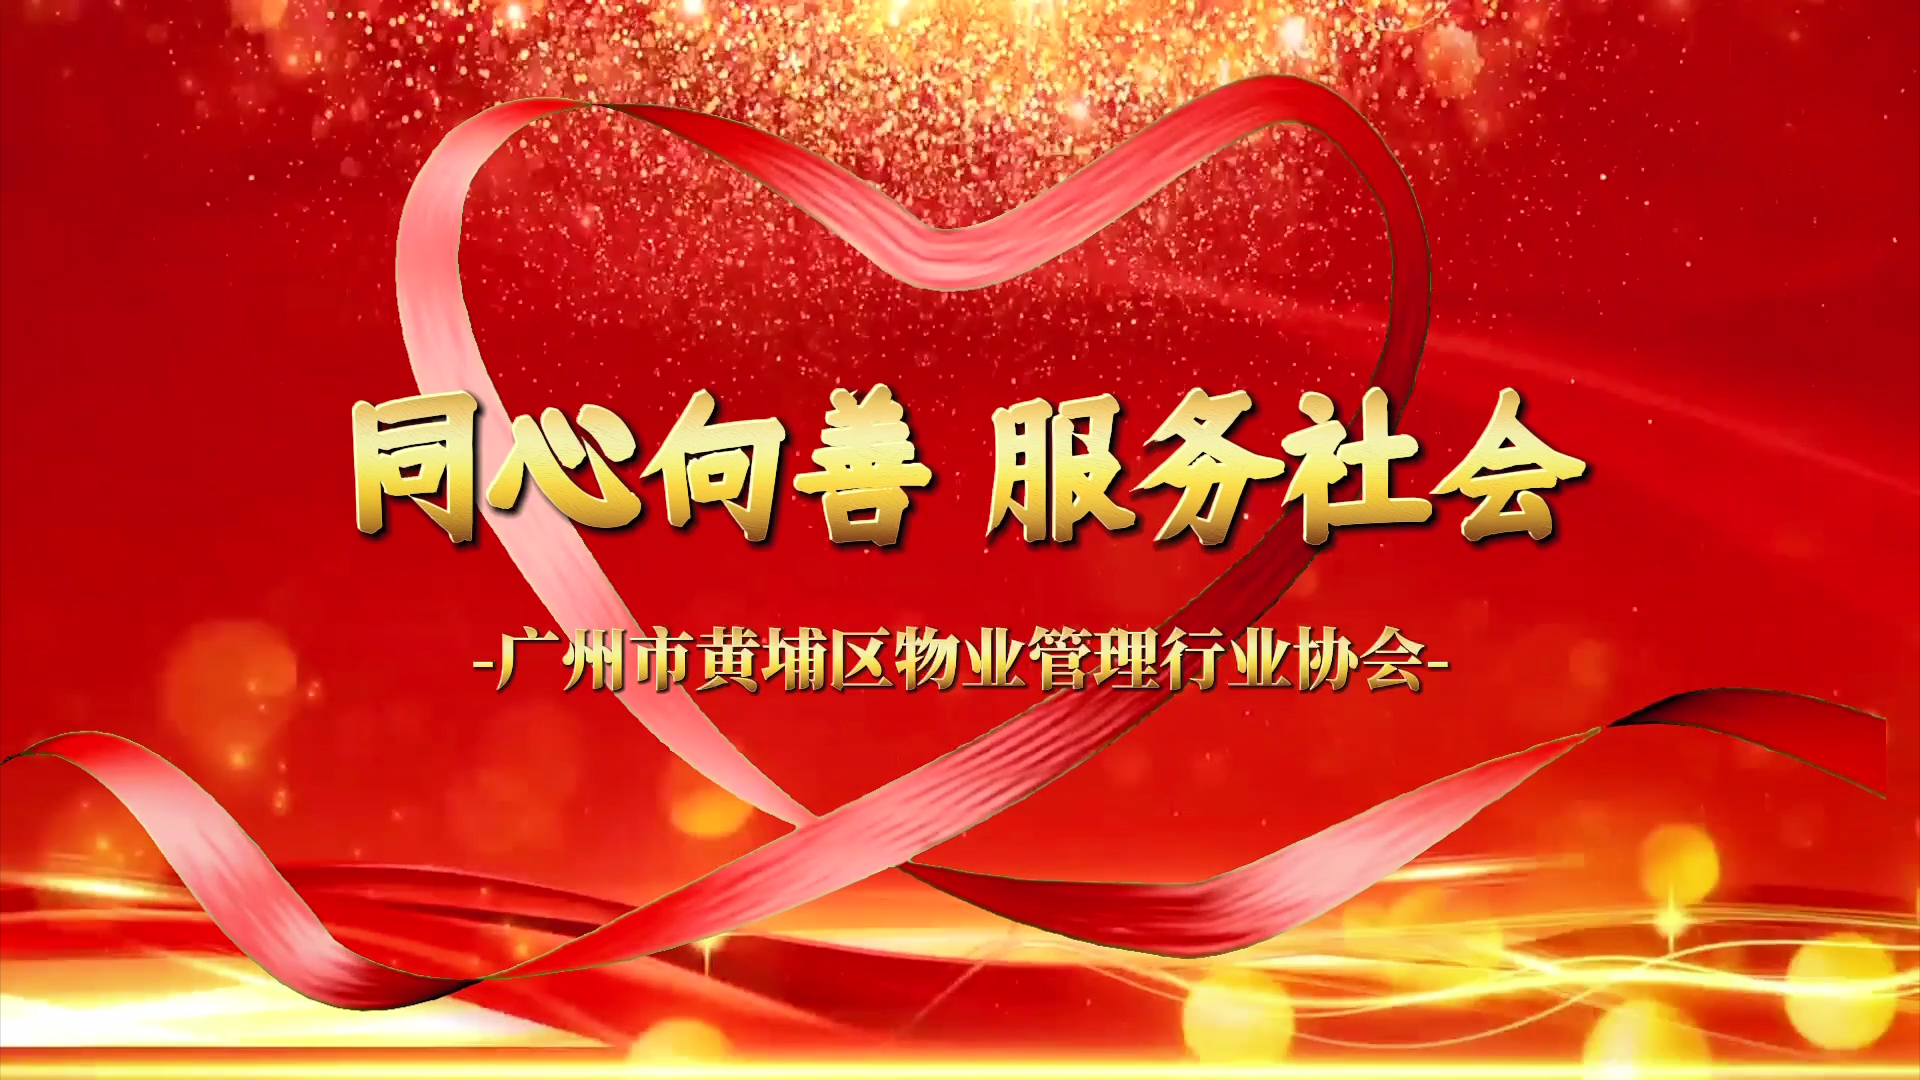 广州市黄埔区物业管理行业协会慈善工作纪录片-《同心向善·服务社会》